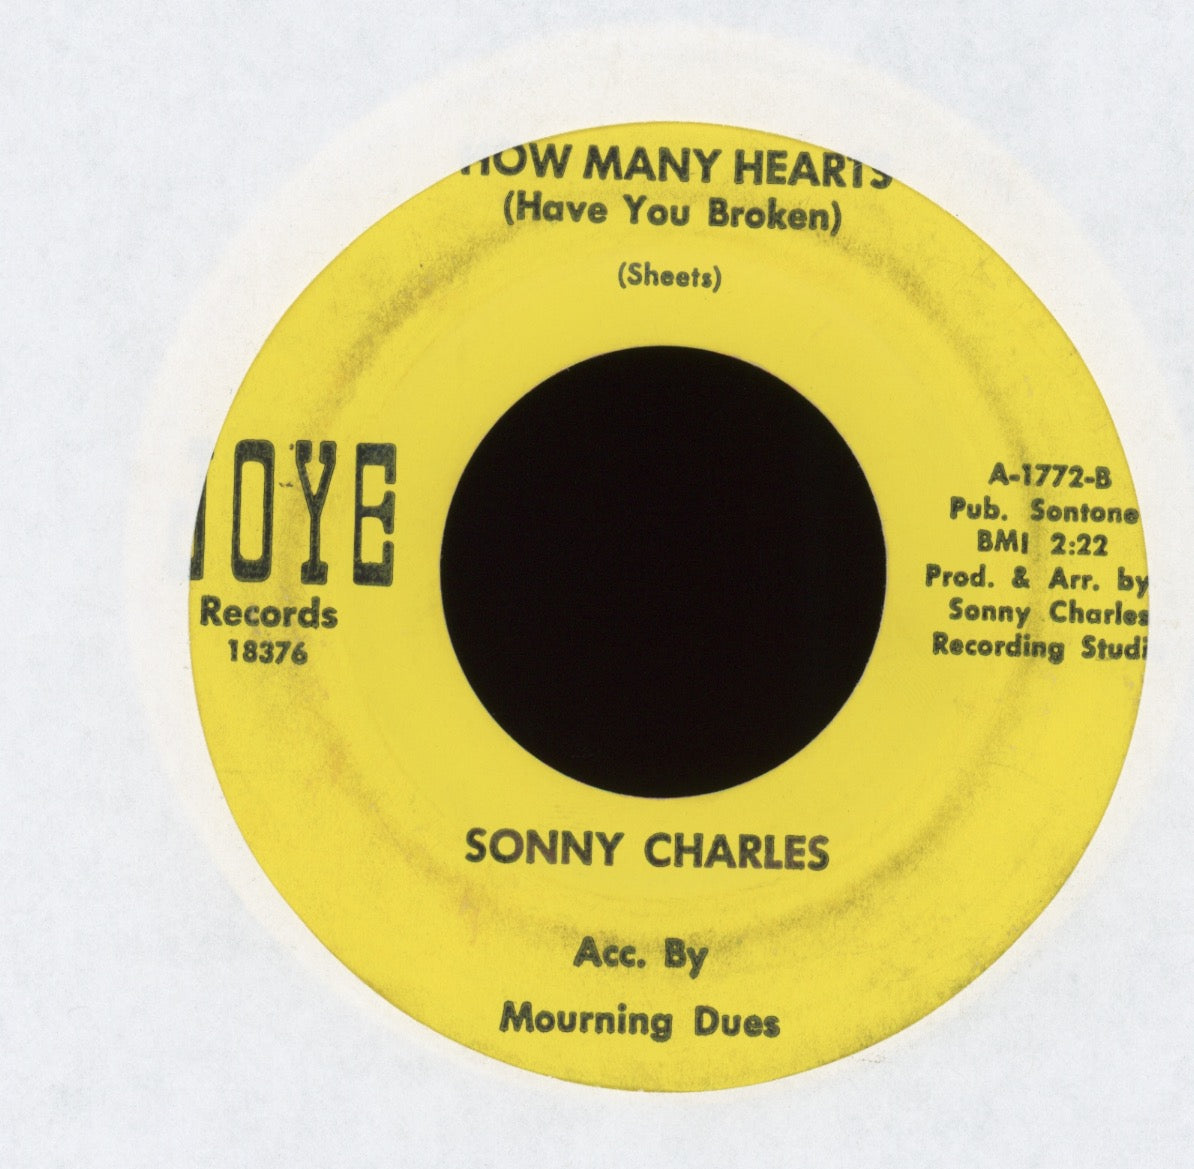 Sonny Charles - Kathy's Gone on JOYE Teen 45